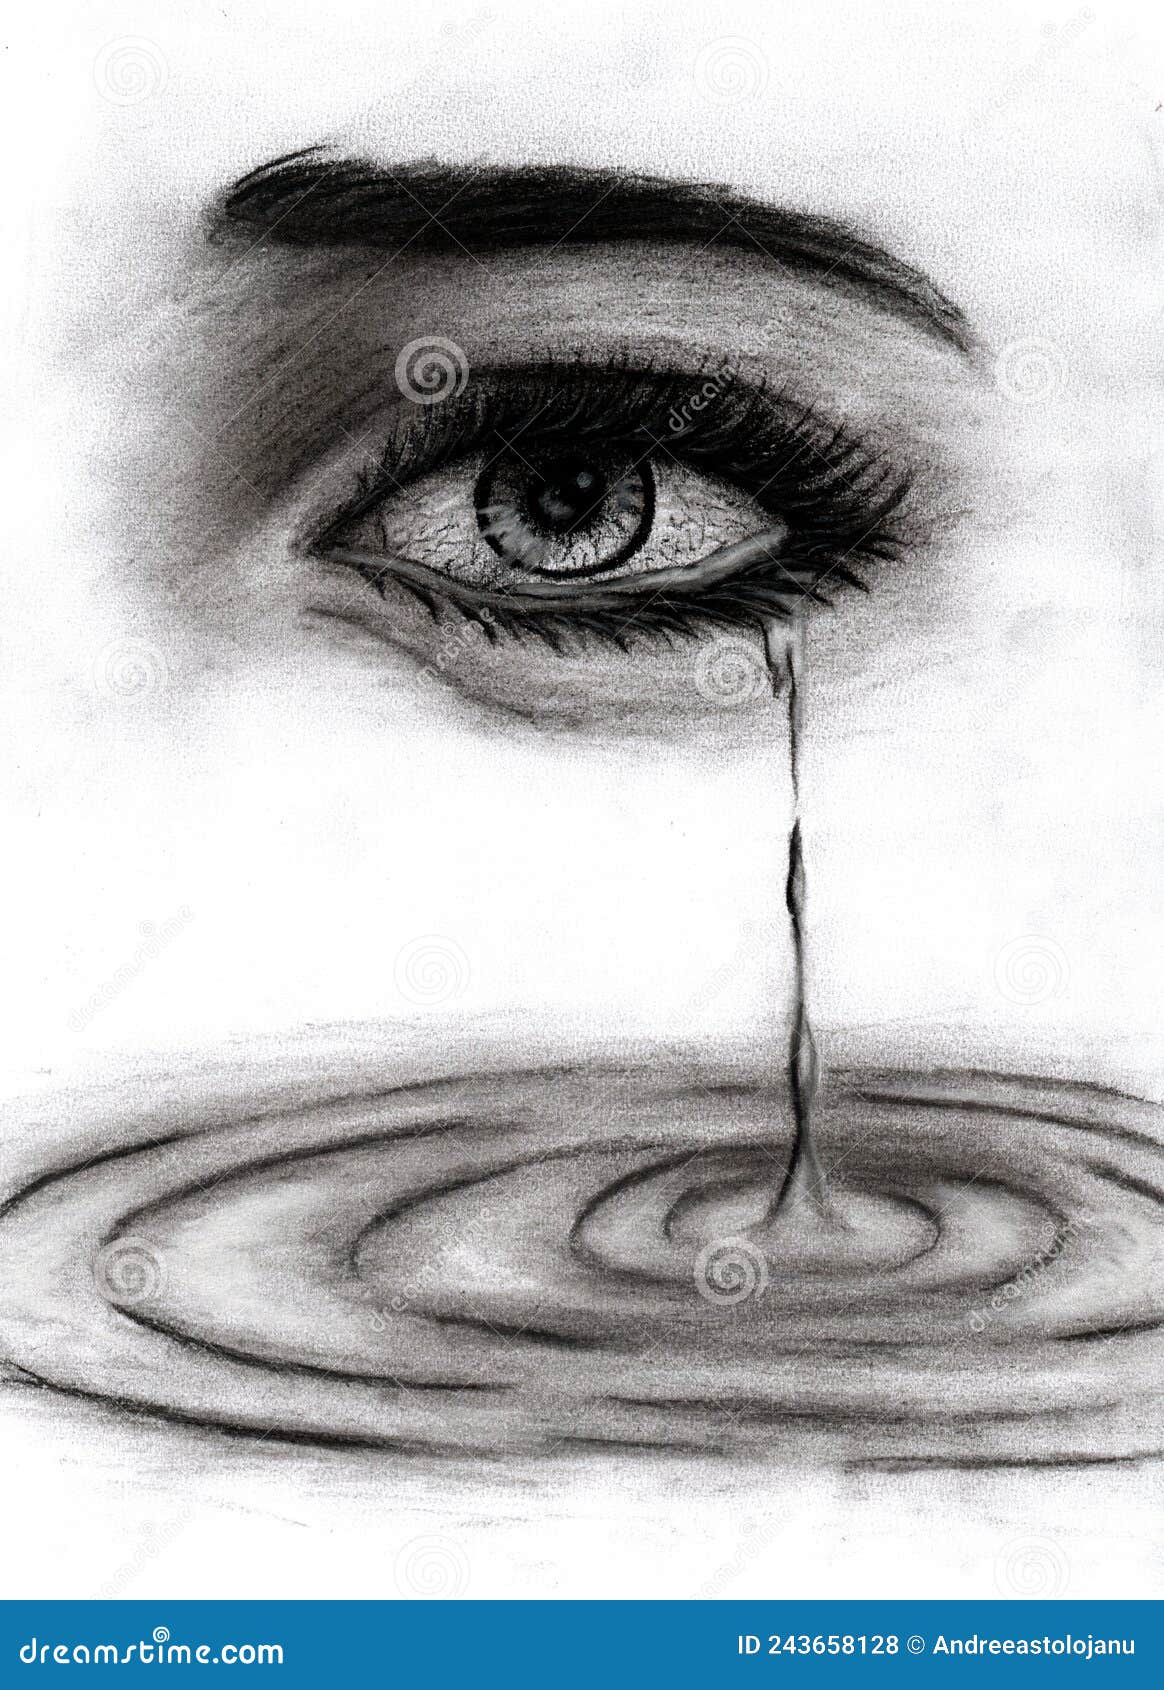 Dibujo De Carbón Vegetal De Un Ojo Desde El Que Fluyen Las Lágrimas Al Agua  Aislada En Una Mujer De Fondo Blanco Llorando Stock de ilustración -  Ilustración de negro, primer: 243658128